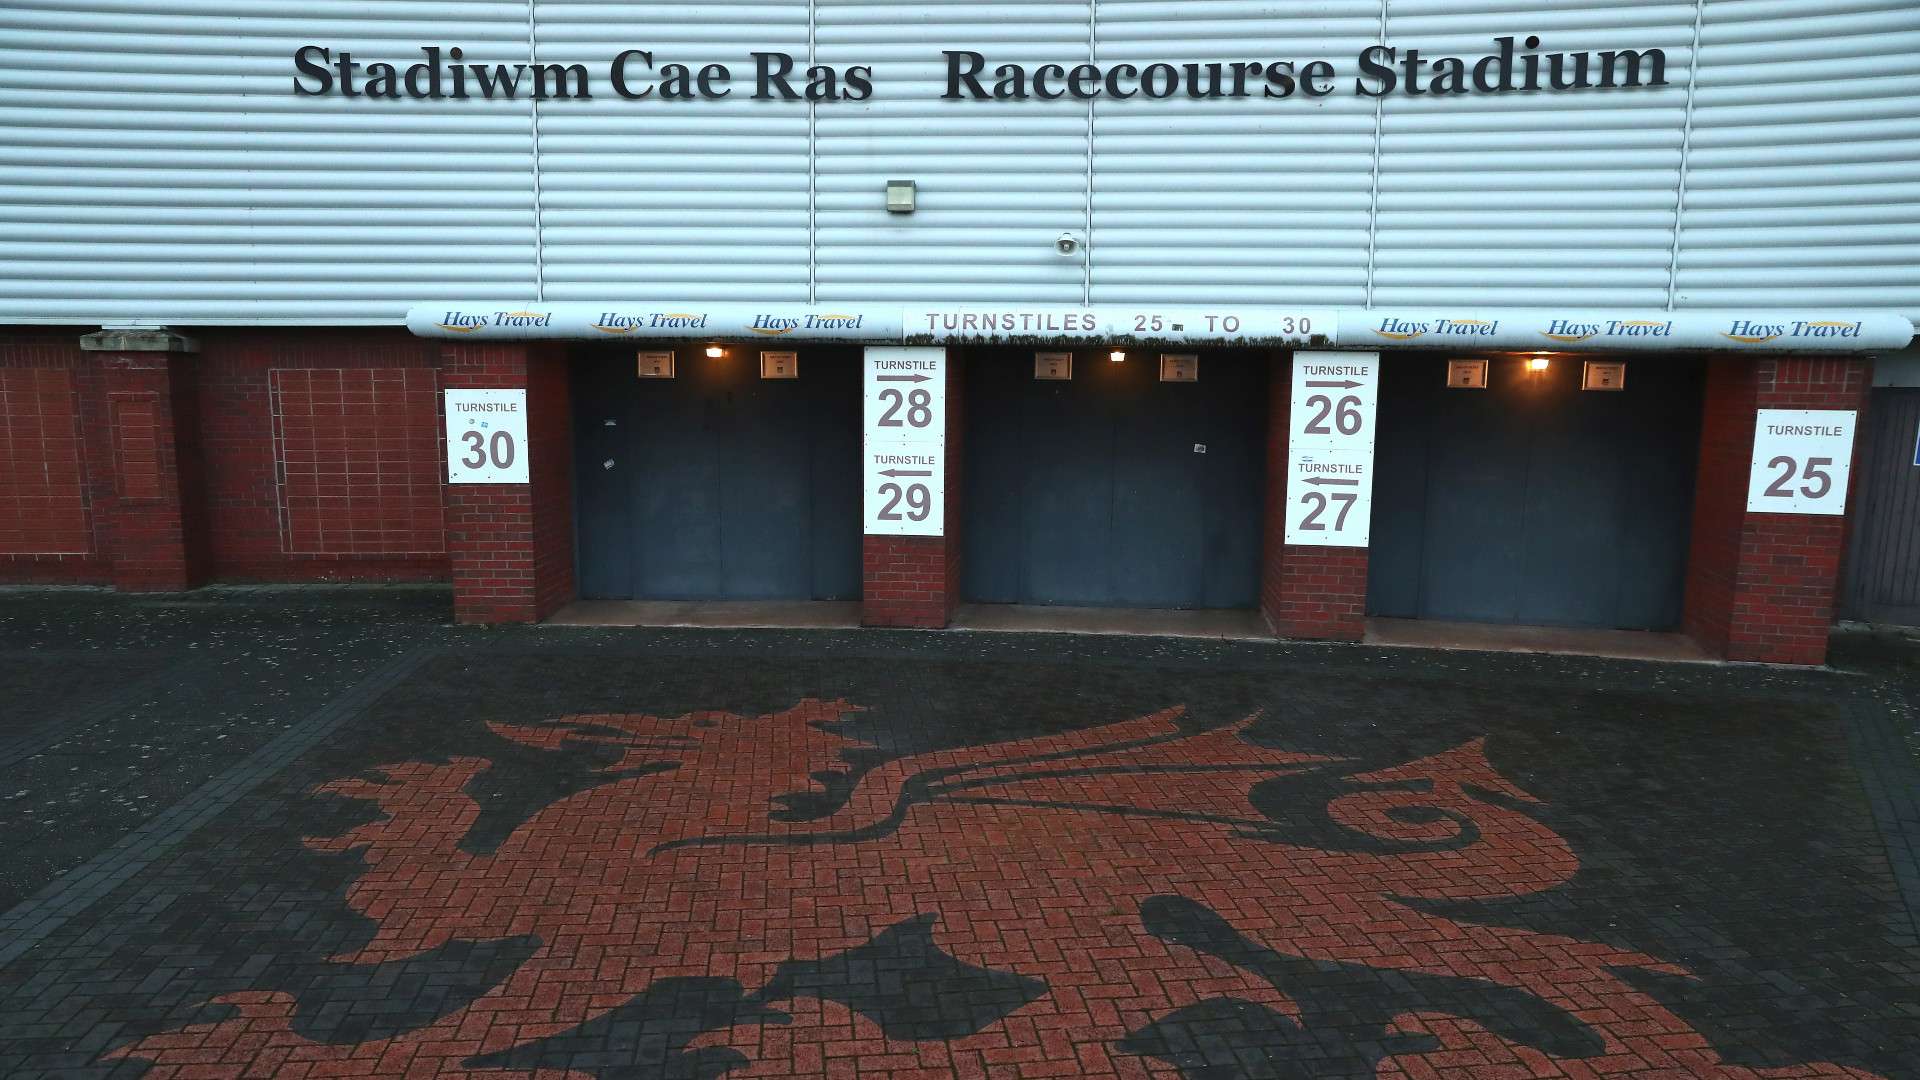 Wrexham Racecourse Ground